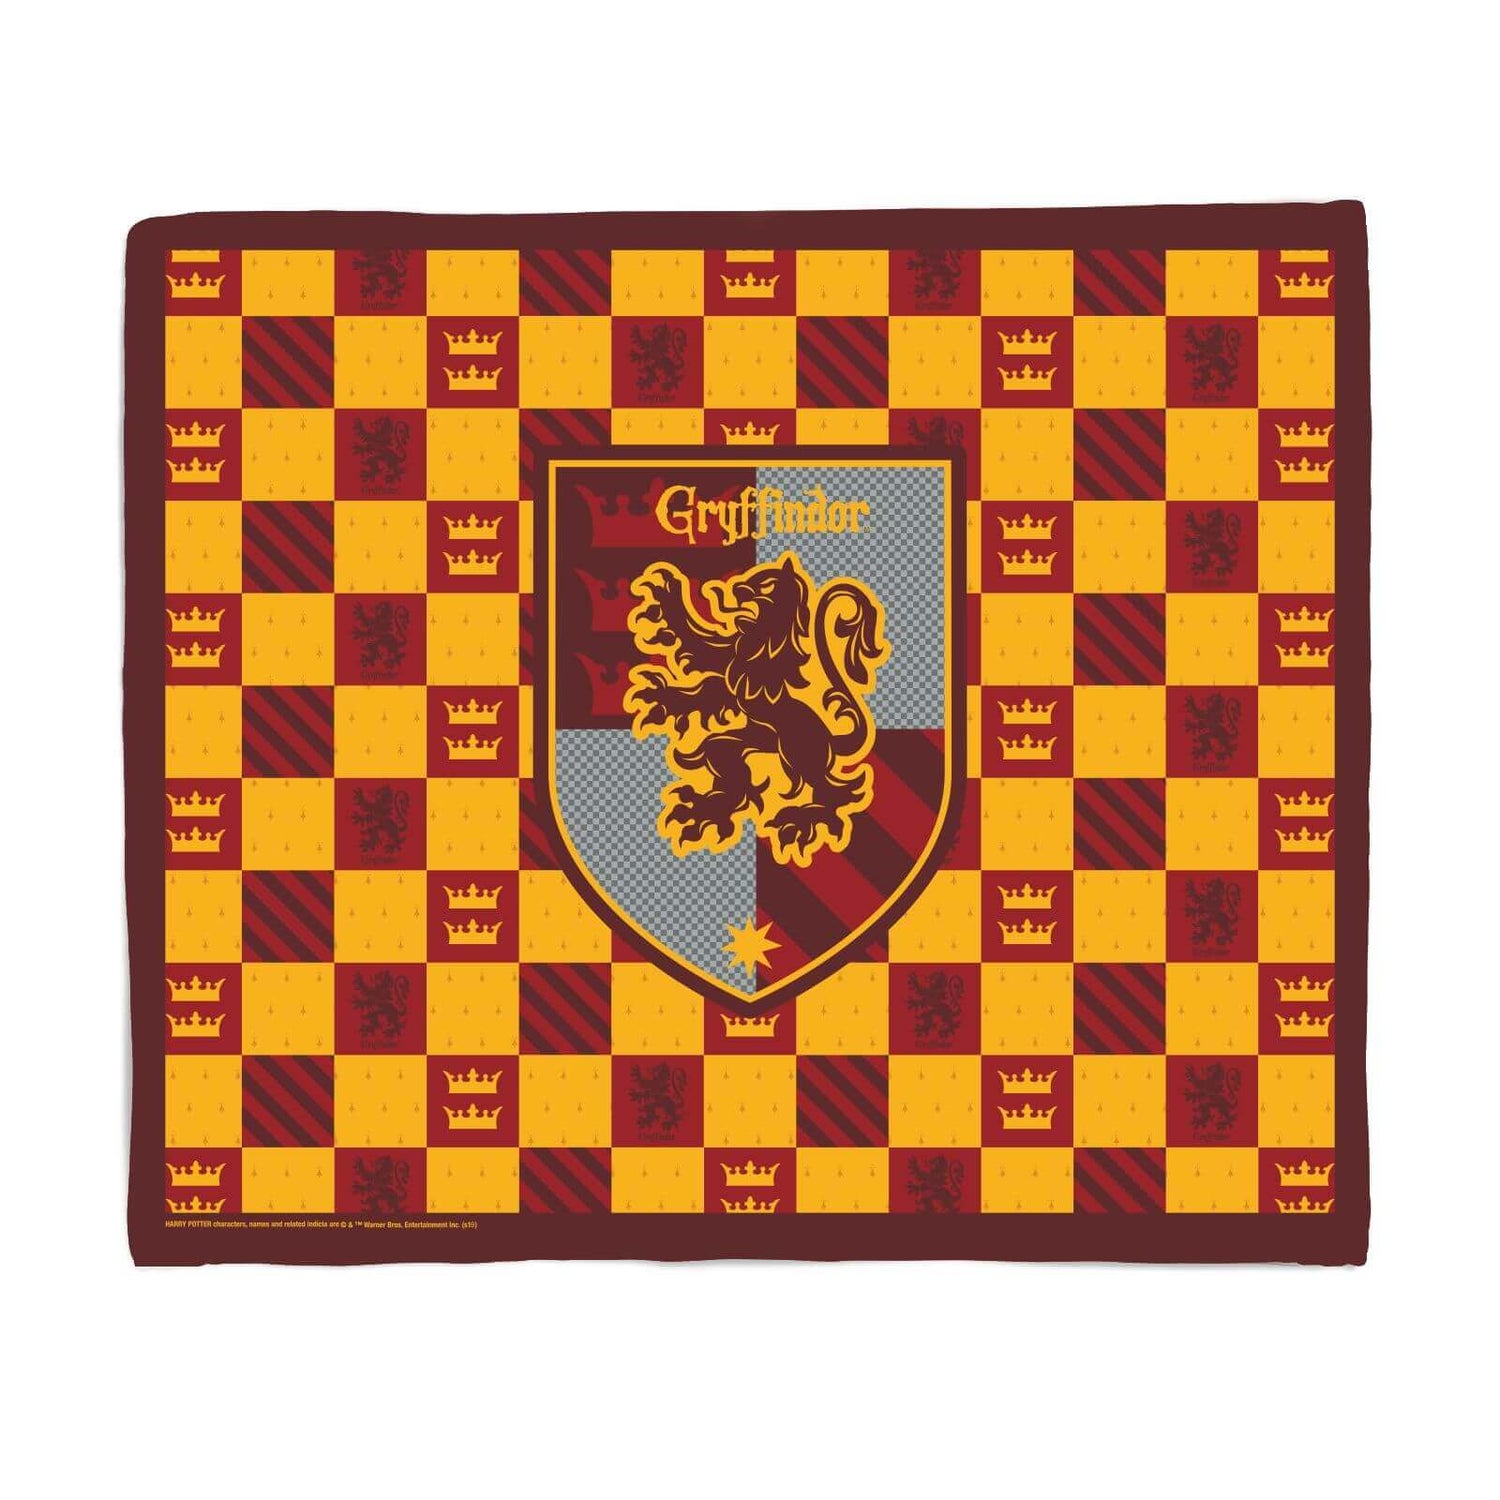 Harry Potter Gryffindor Fleece Blanket - Large (150cm x 200cm)